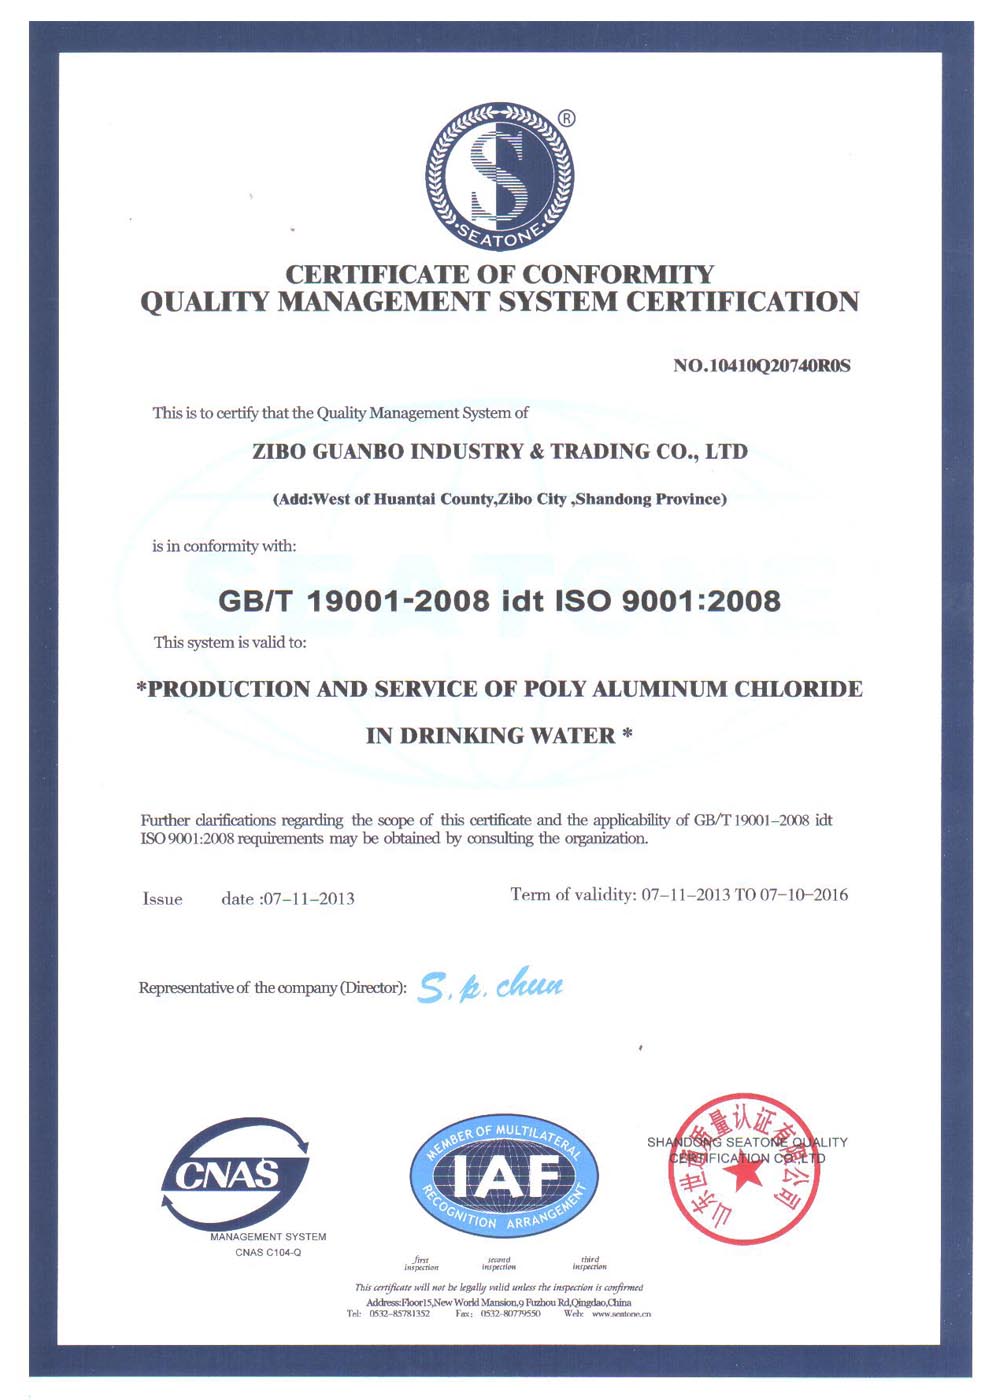 GB/T 19001-2008 idt ISO 9001:2008